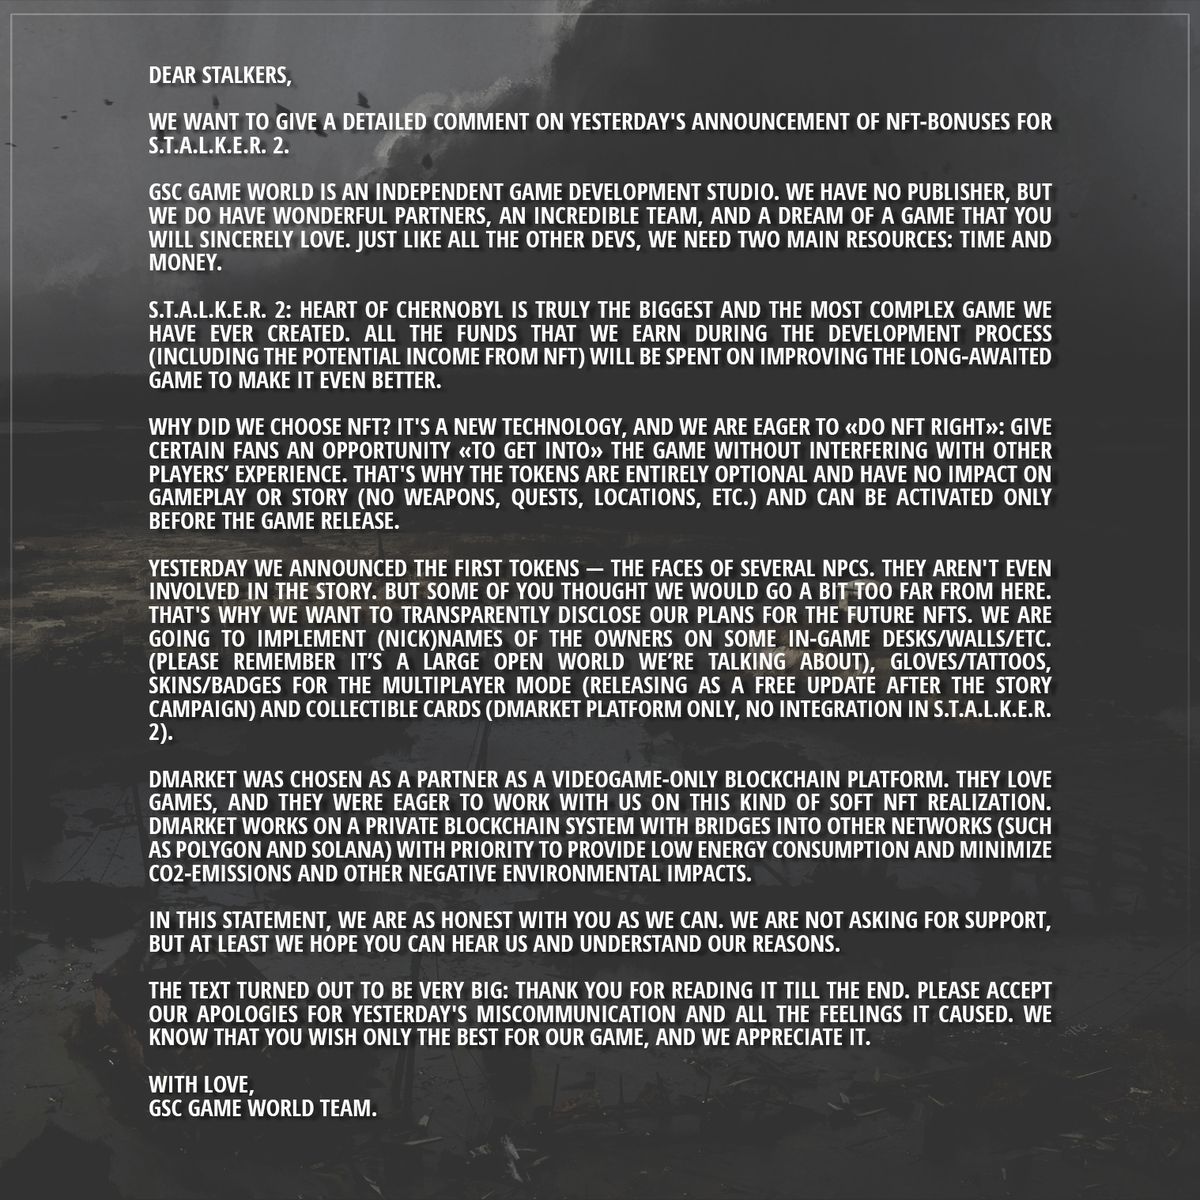 il testo di una lettera alla comunità di Stalker 2 che difende i piani per introdurre gli NFT nel gioco del 2022.